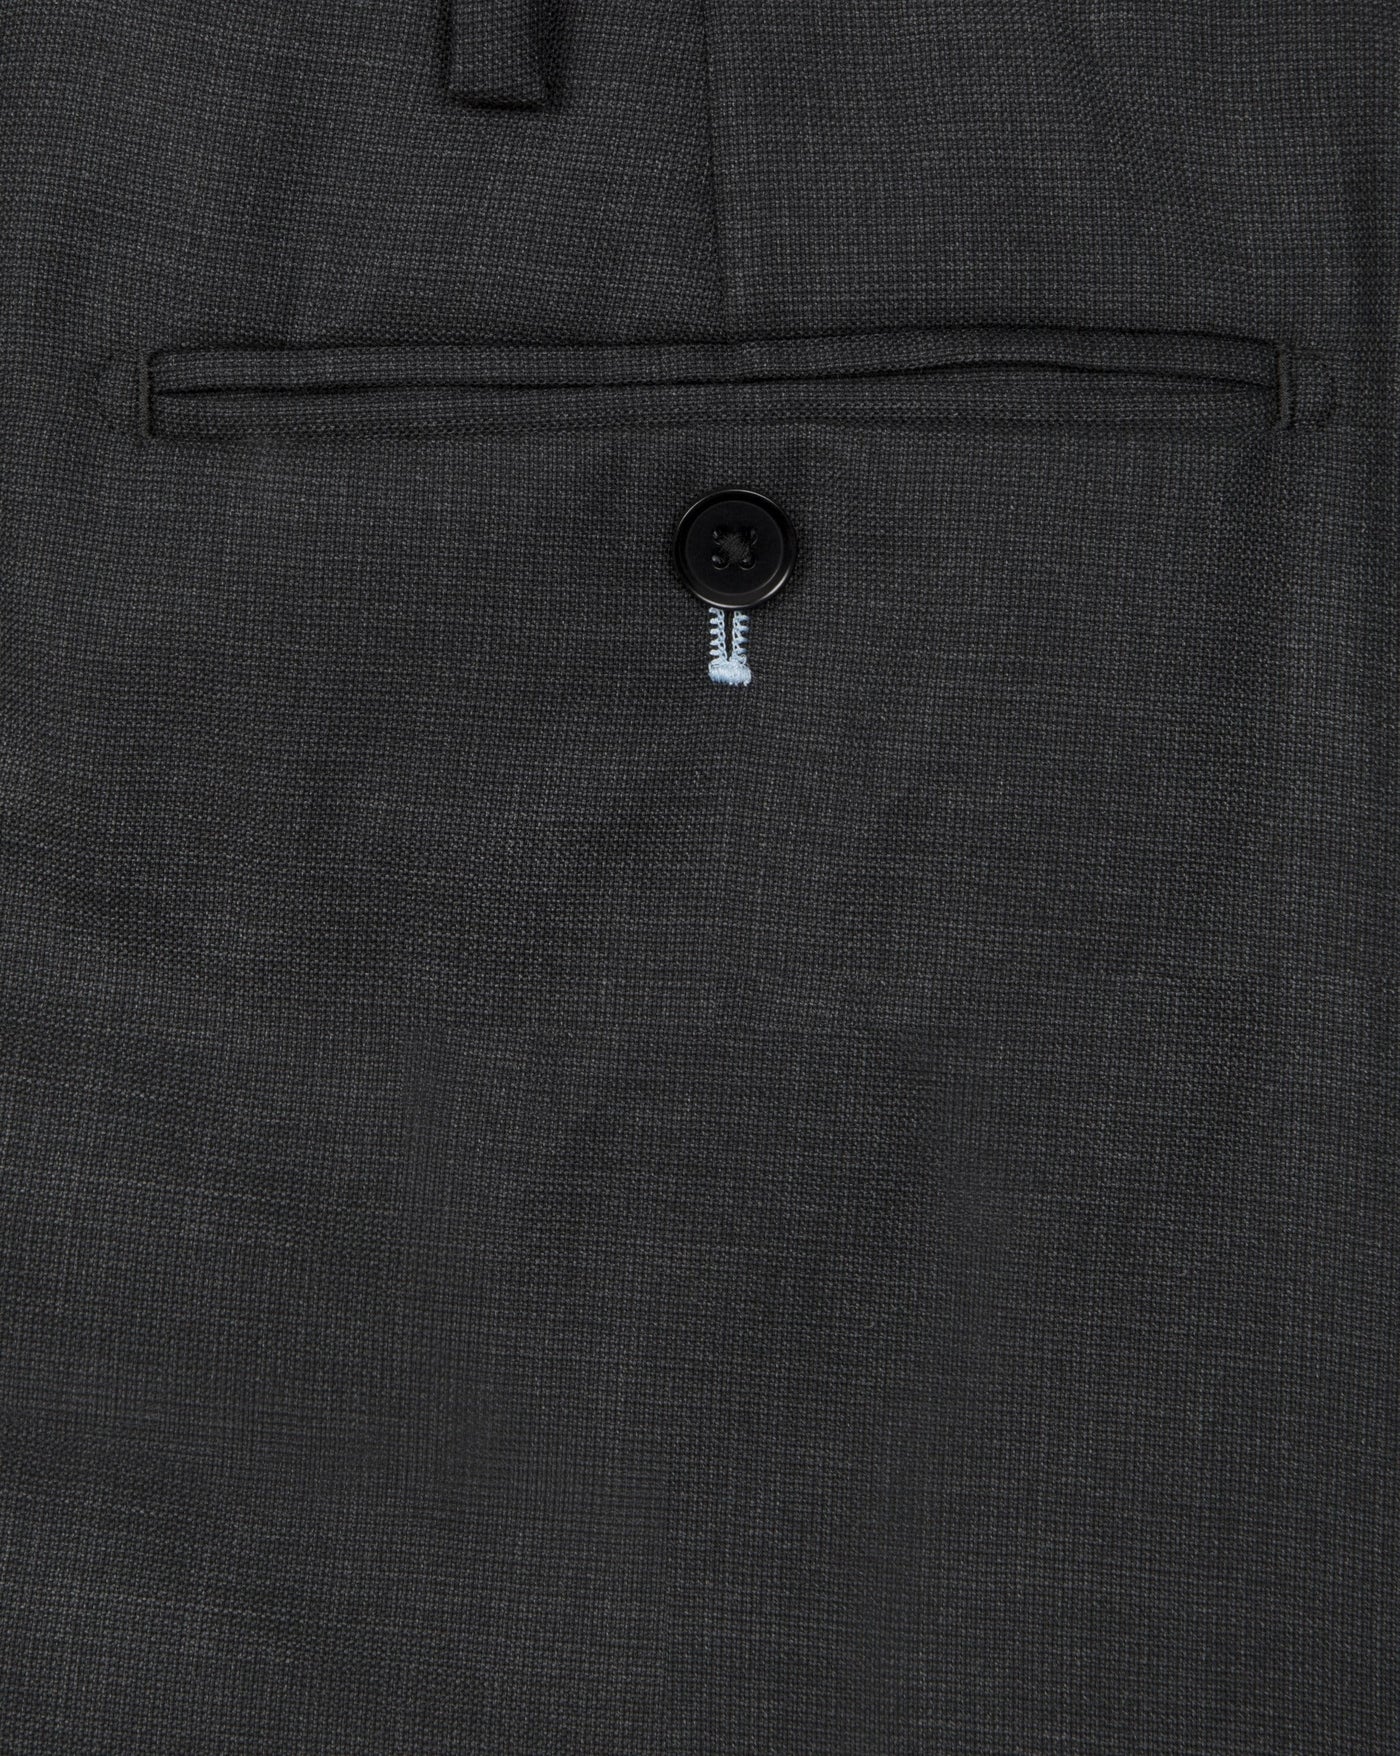 Dark Grey Nailshead Suit - Mark marengo